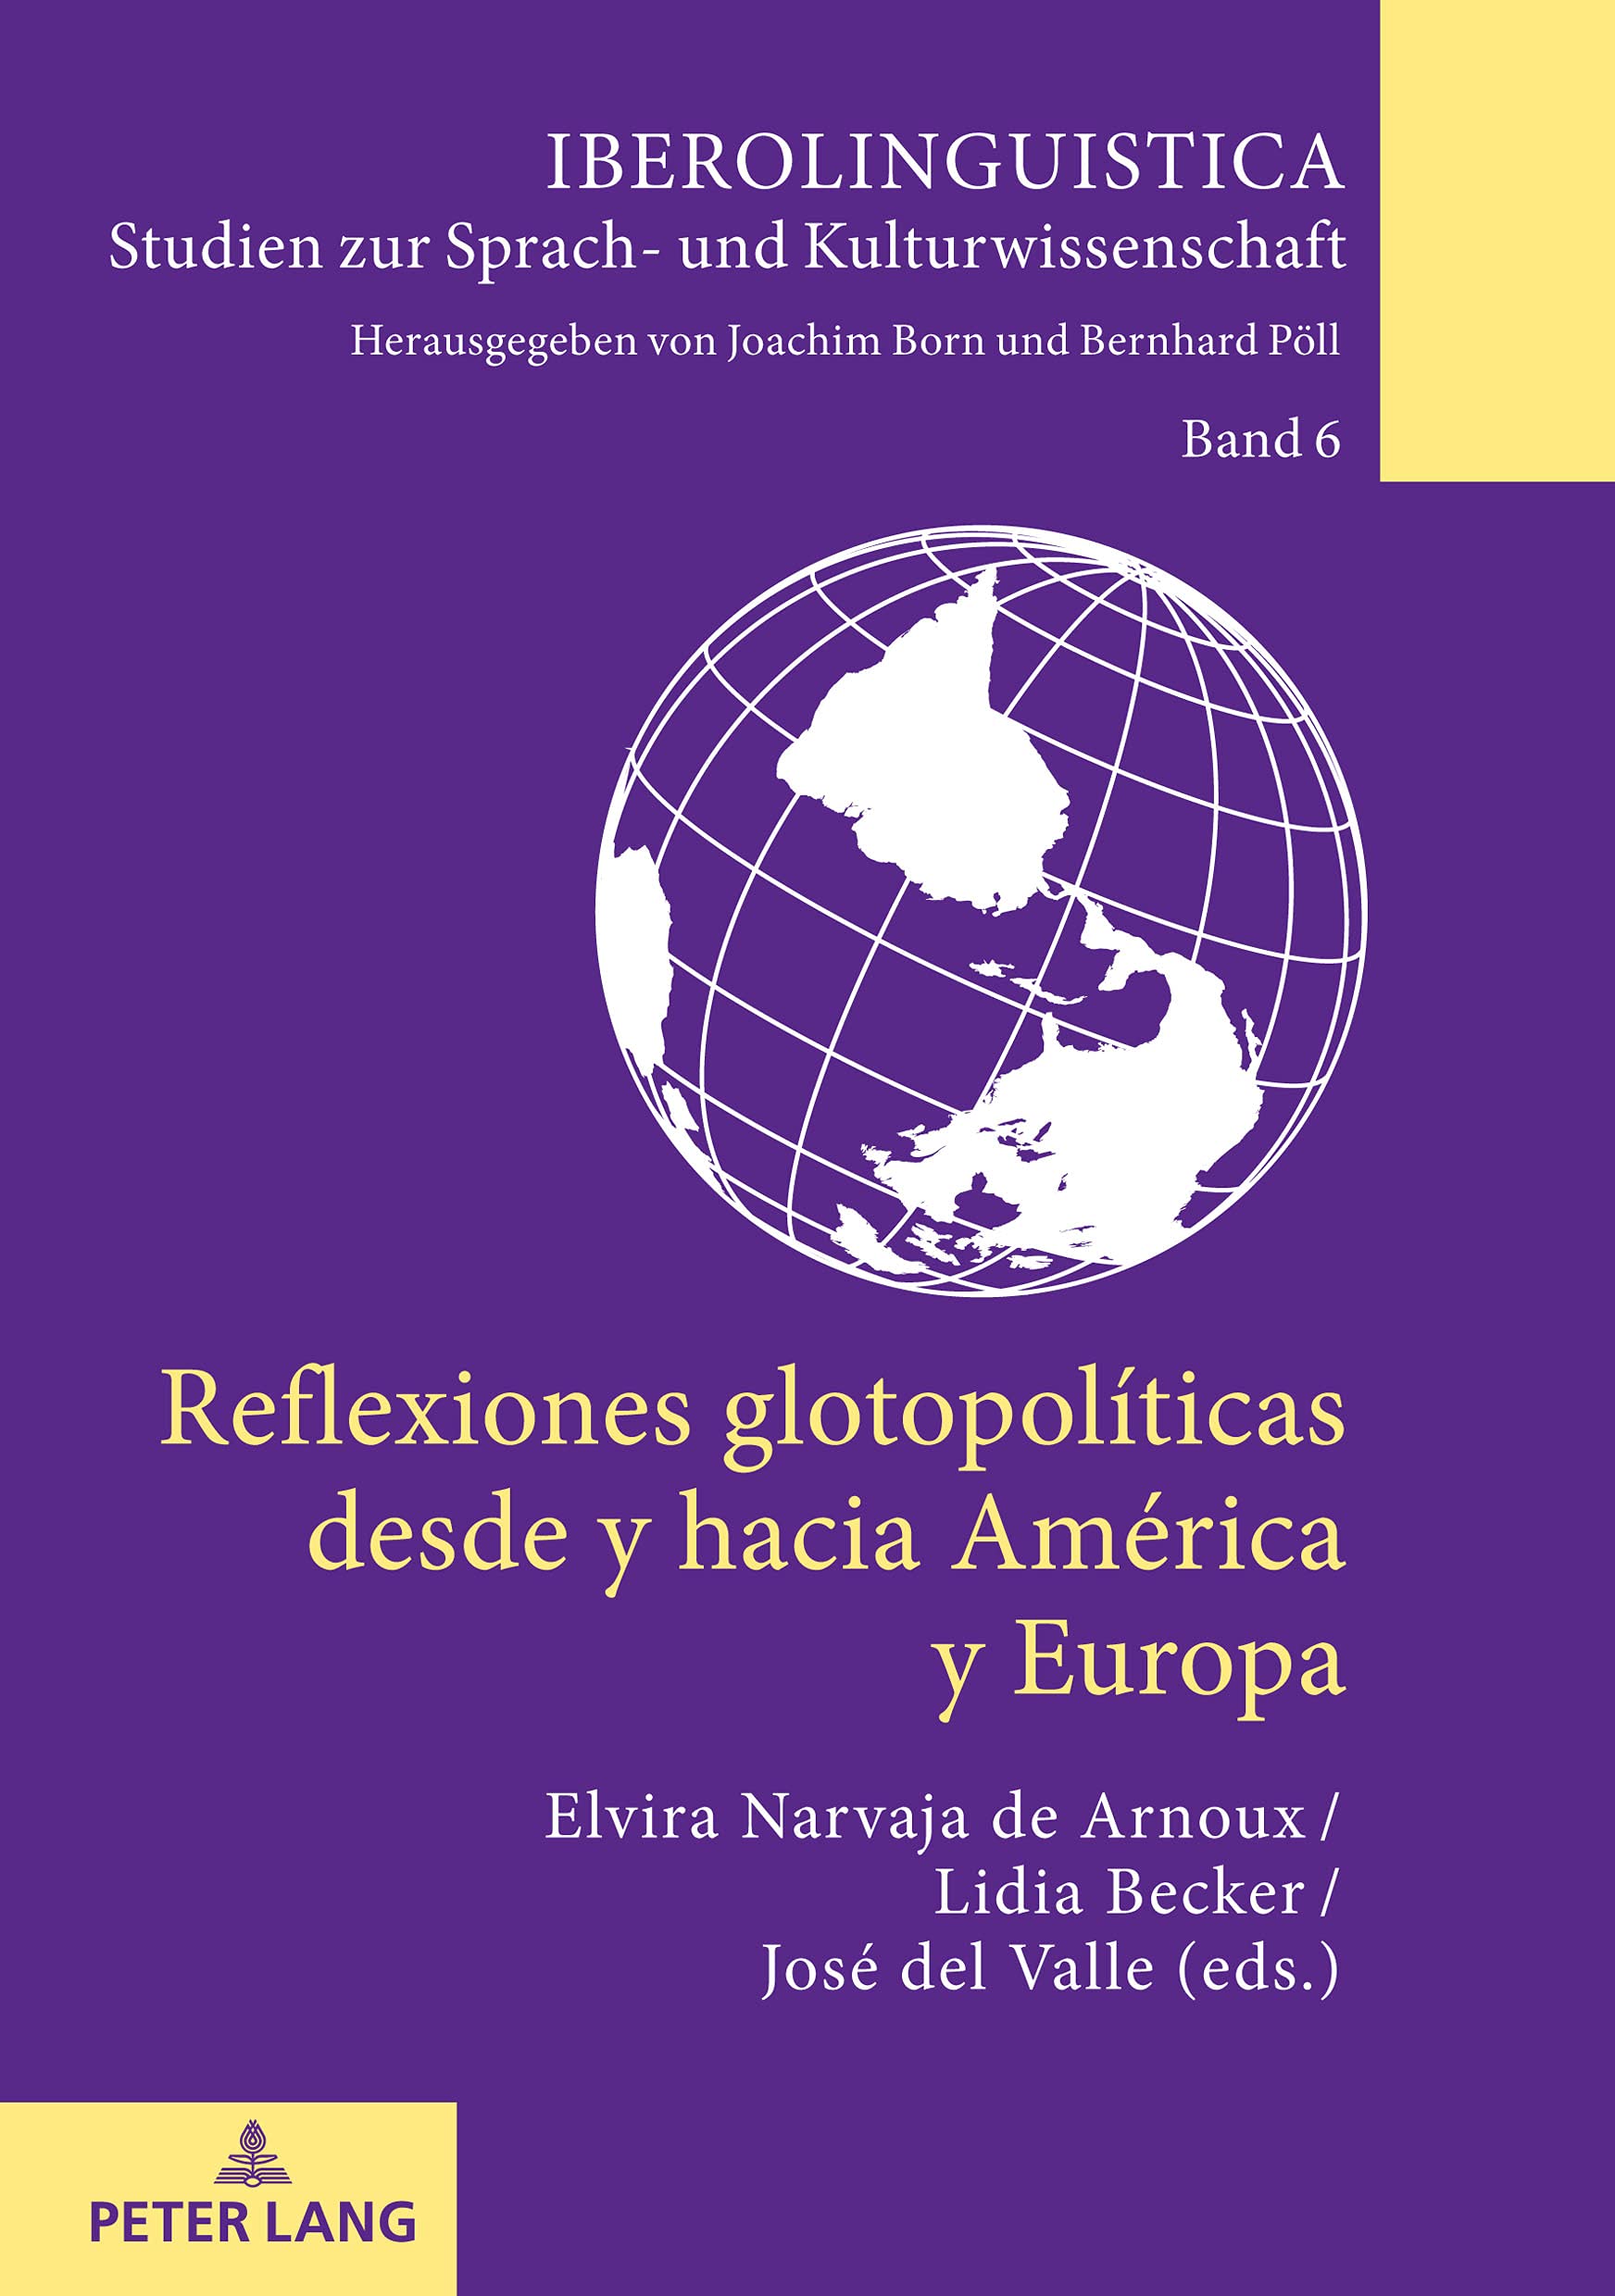 Imagen de portada del libro Reflexiones glotopolíticas desde y hacia América y Europa